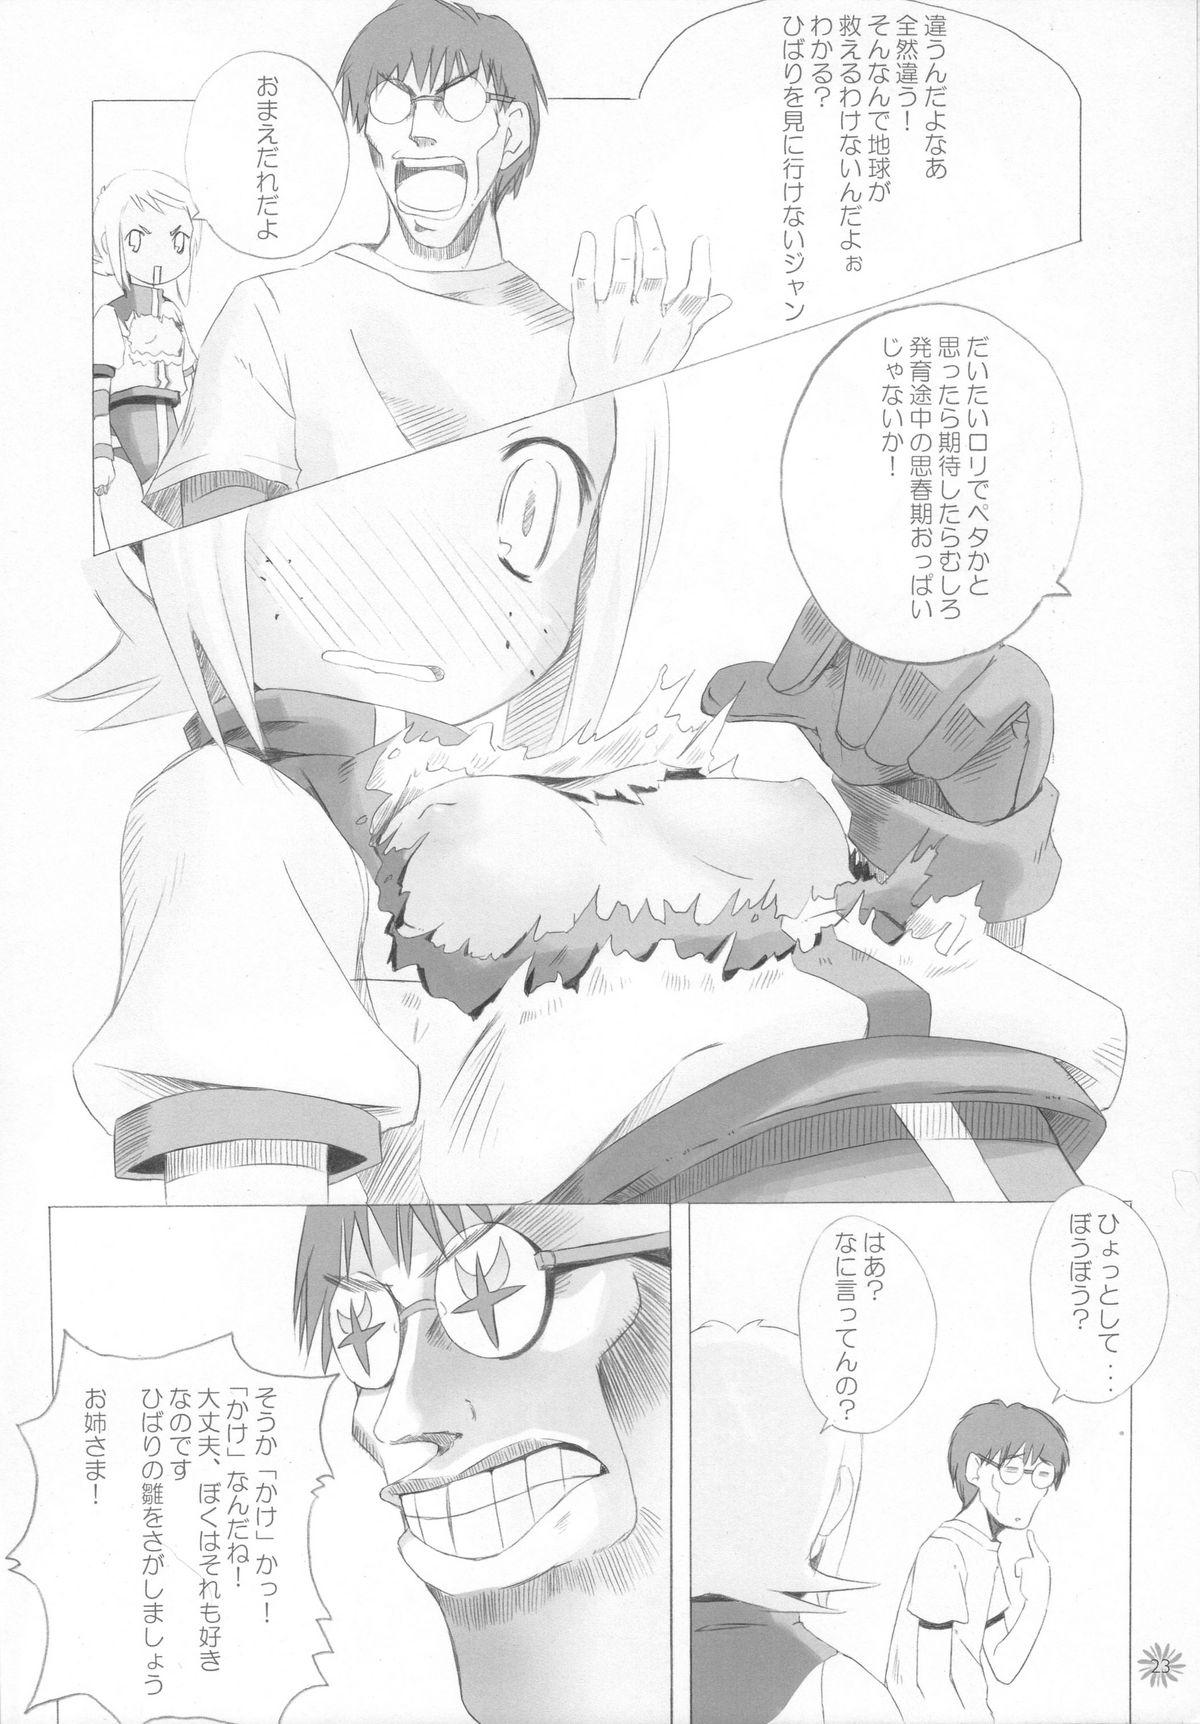 Transex CAPTOR - Cardcaptor sakura Higurashi no naku koro ni Diebuster Girl - Page 9